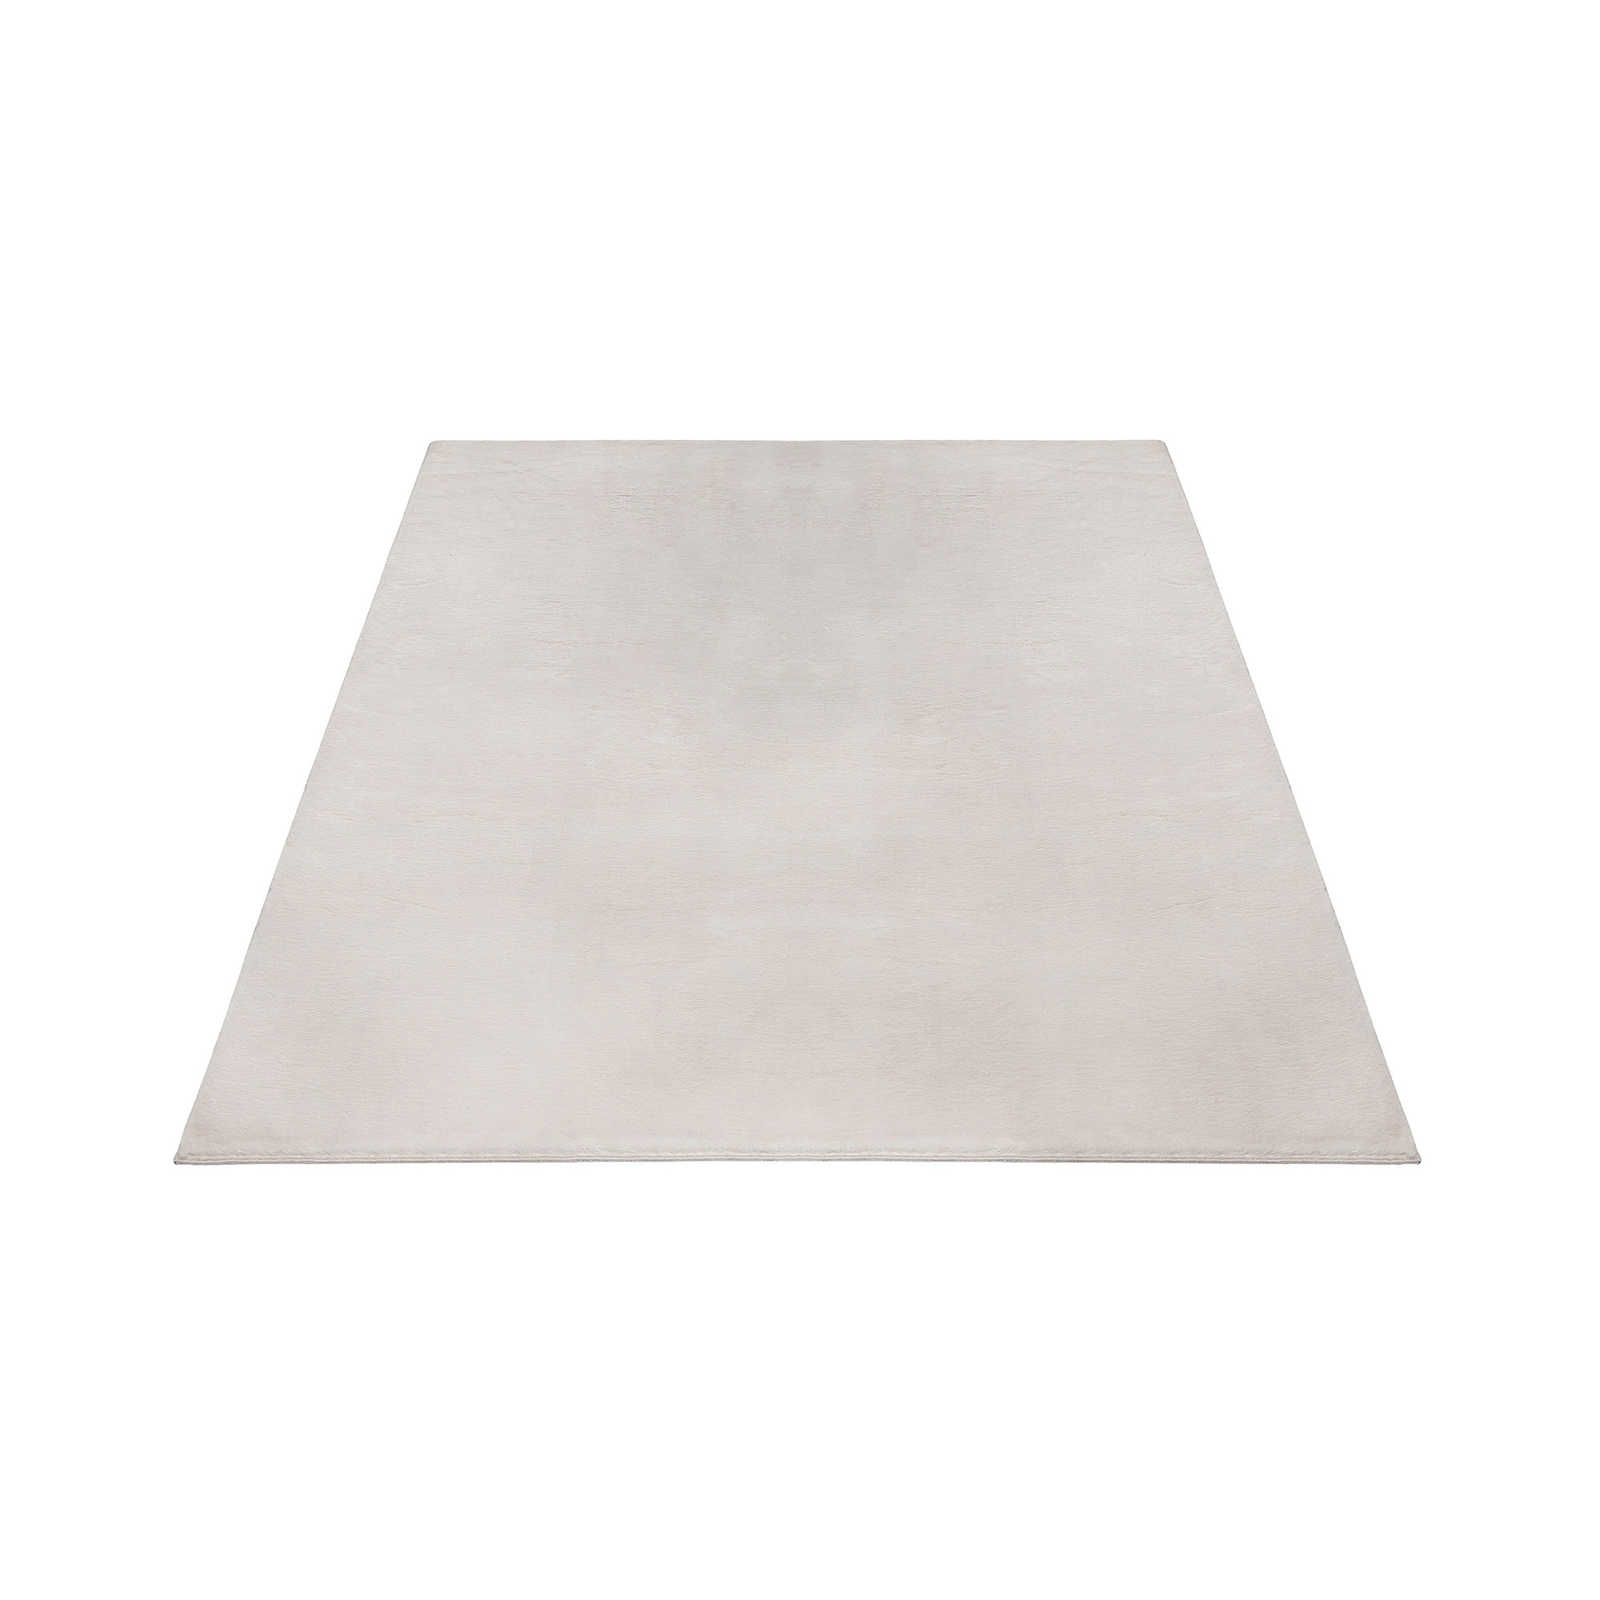 Kuschelweicher Hochflor Teppich in leichtem Beige – 230 x 160 cm
